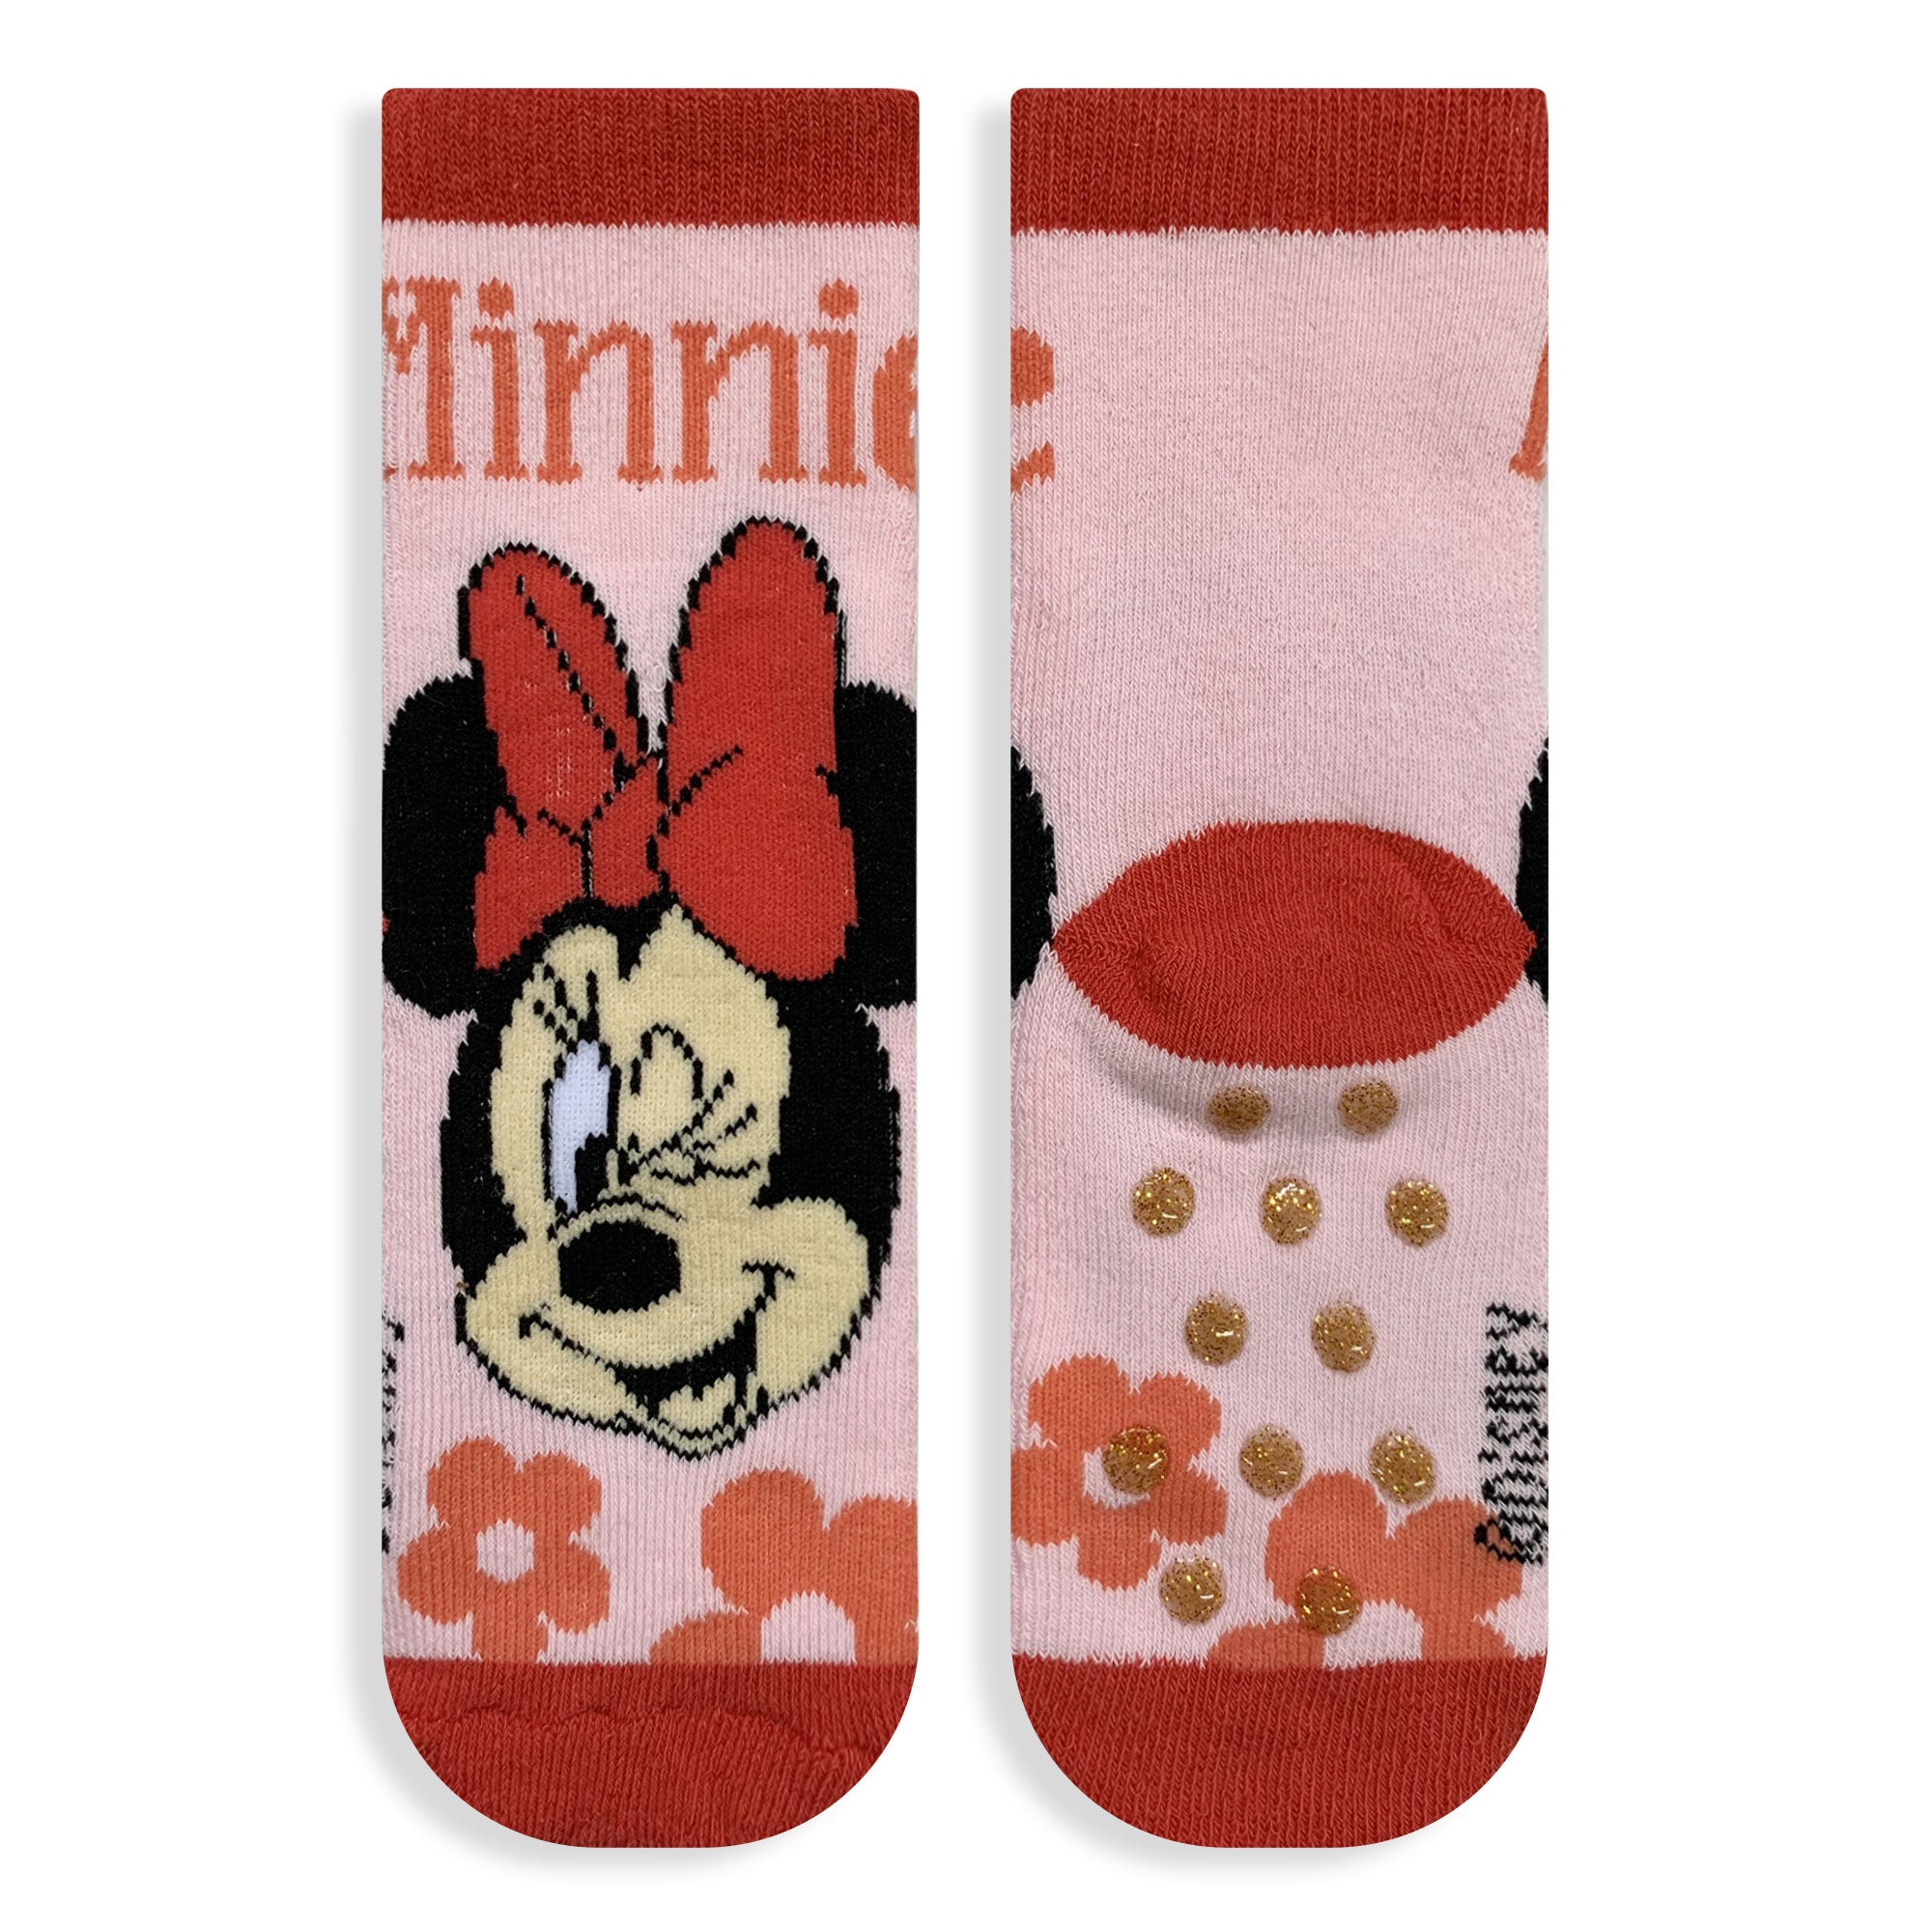 Calzini antiscivolo bambina Disney Minnie Mouse in spugna cotone invernale 6219